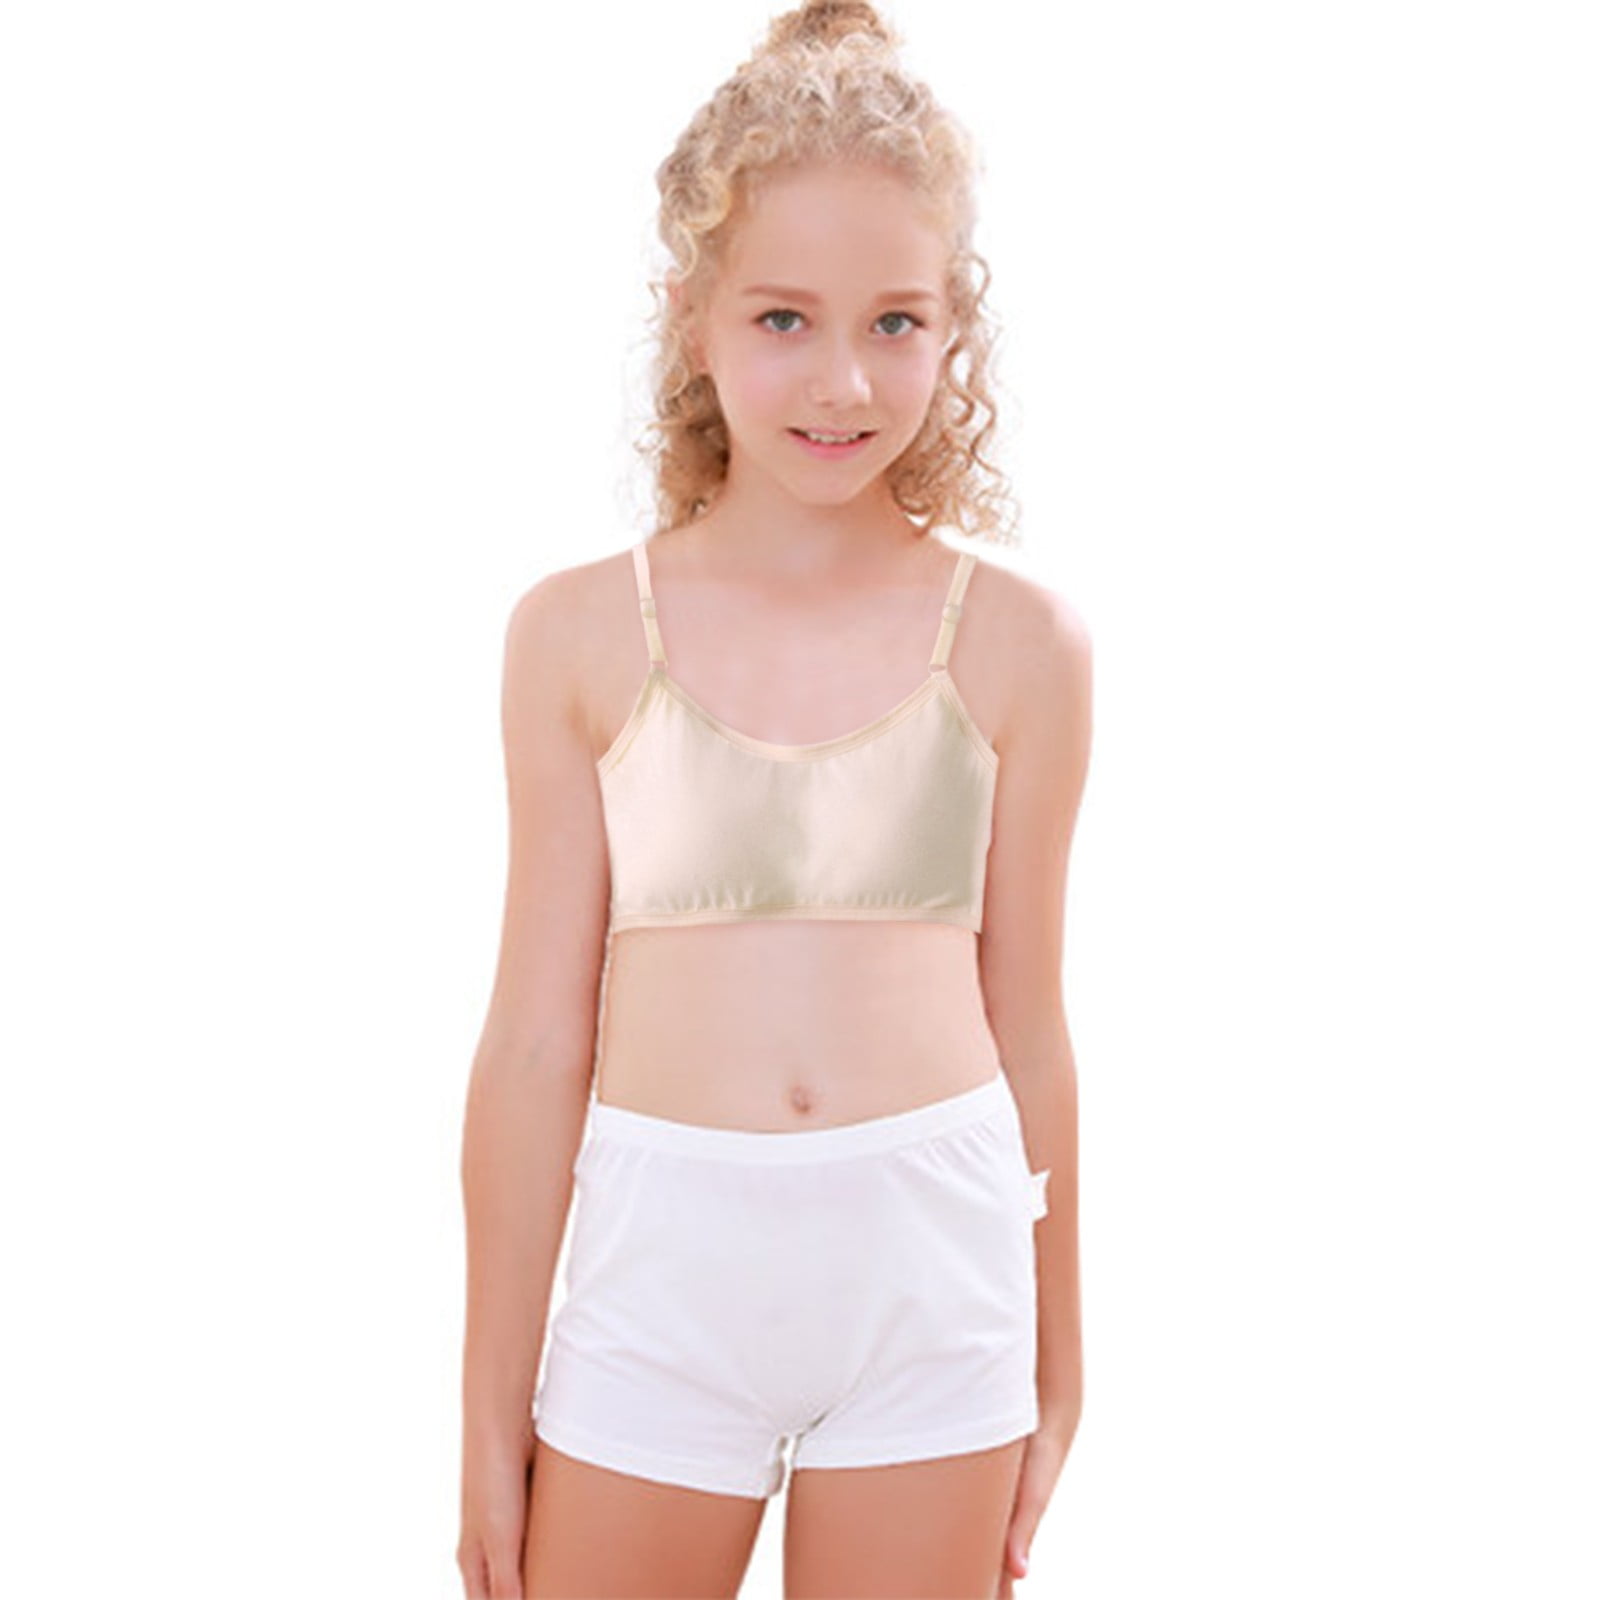  Yistu Toddler Girl Underwear,Training Bras Little Girl